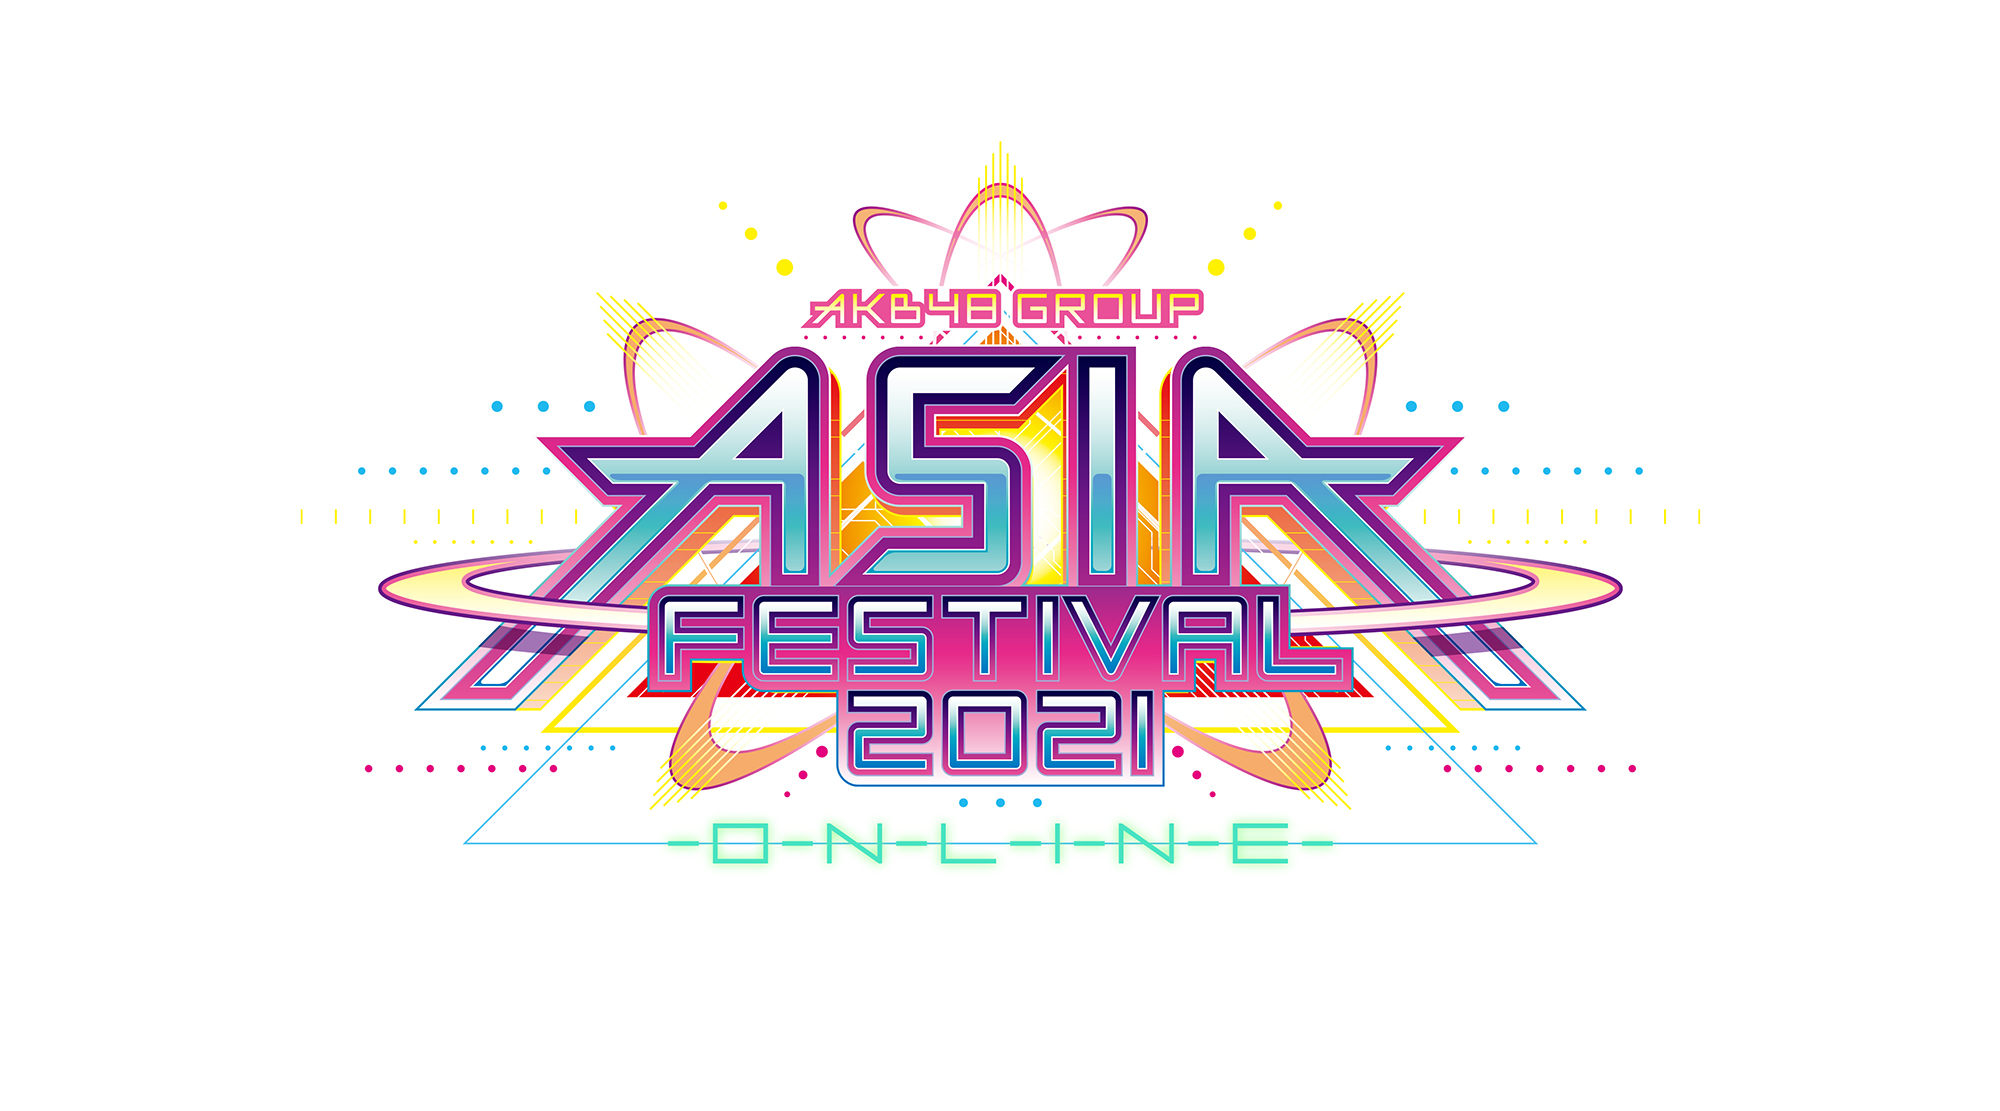 AKB48 Group Asia Festival 2021 Online